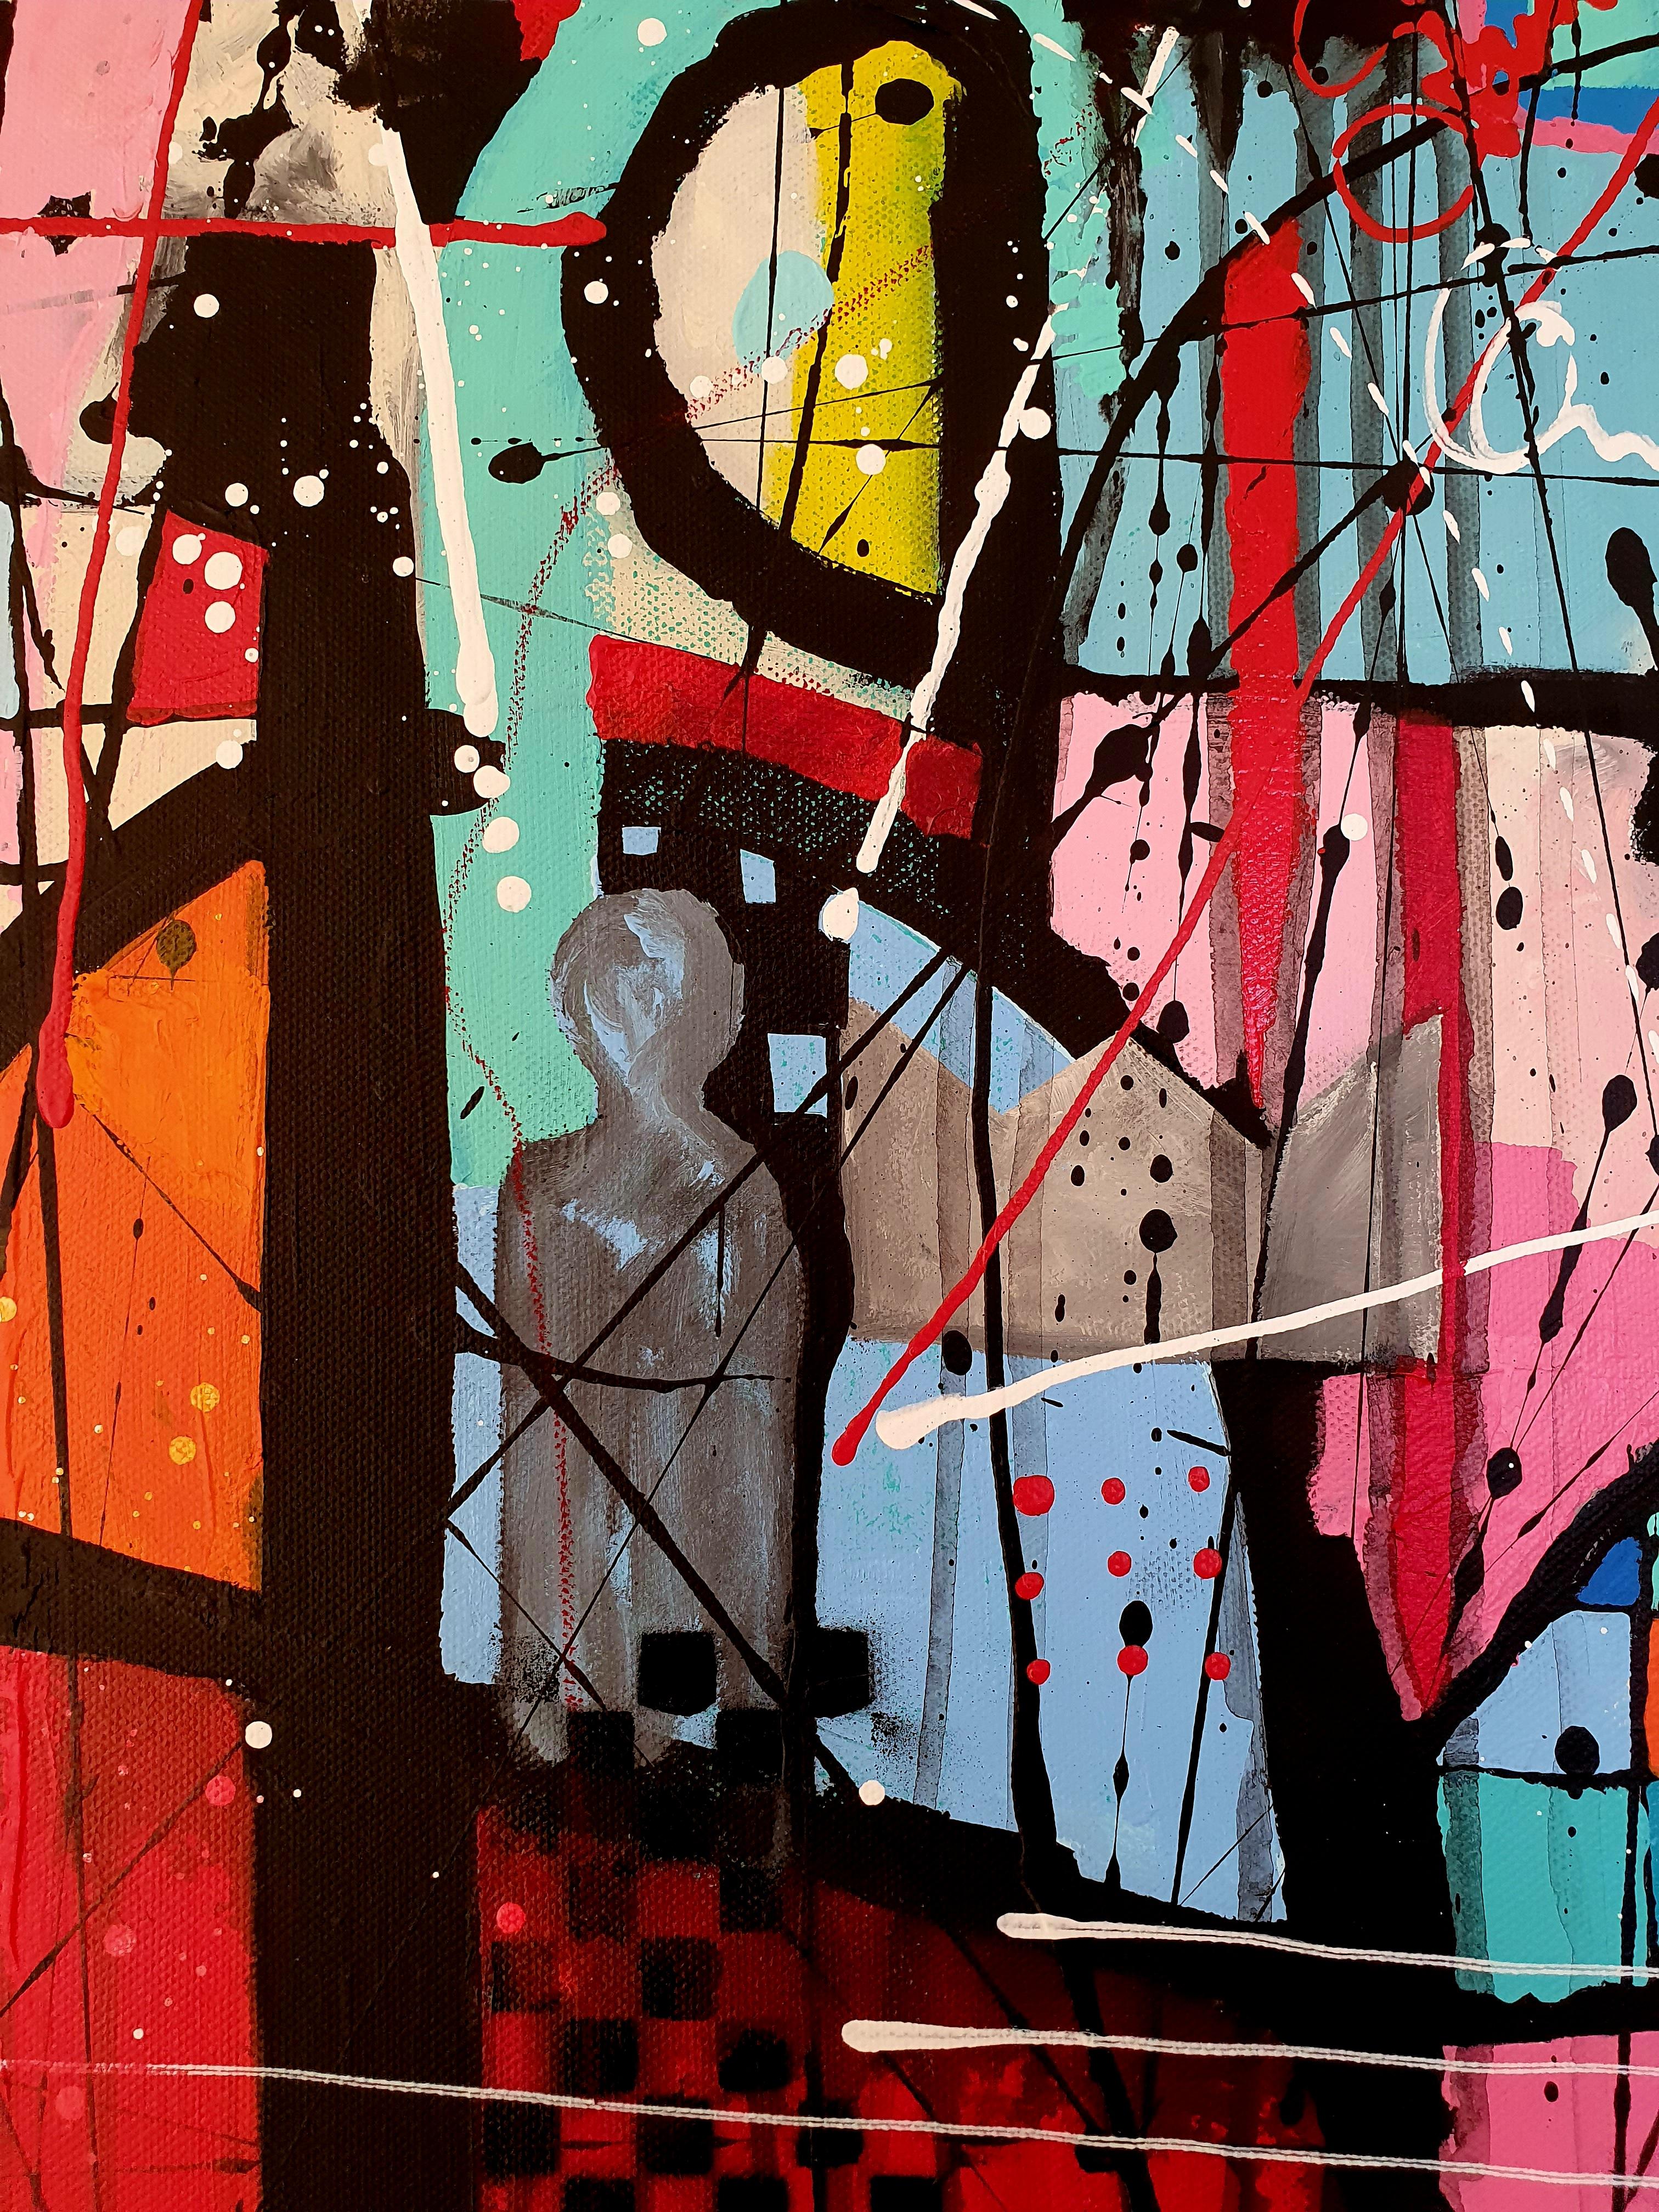 Stardust – gefühlvolles, farbenfrohes, abstraktes, auffälliges, expressionistisches Gemälde  (Braun), Figurative Painting, von Karnish Art